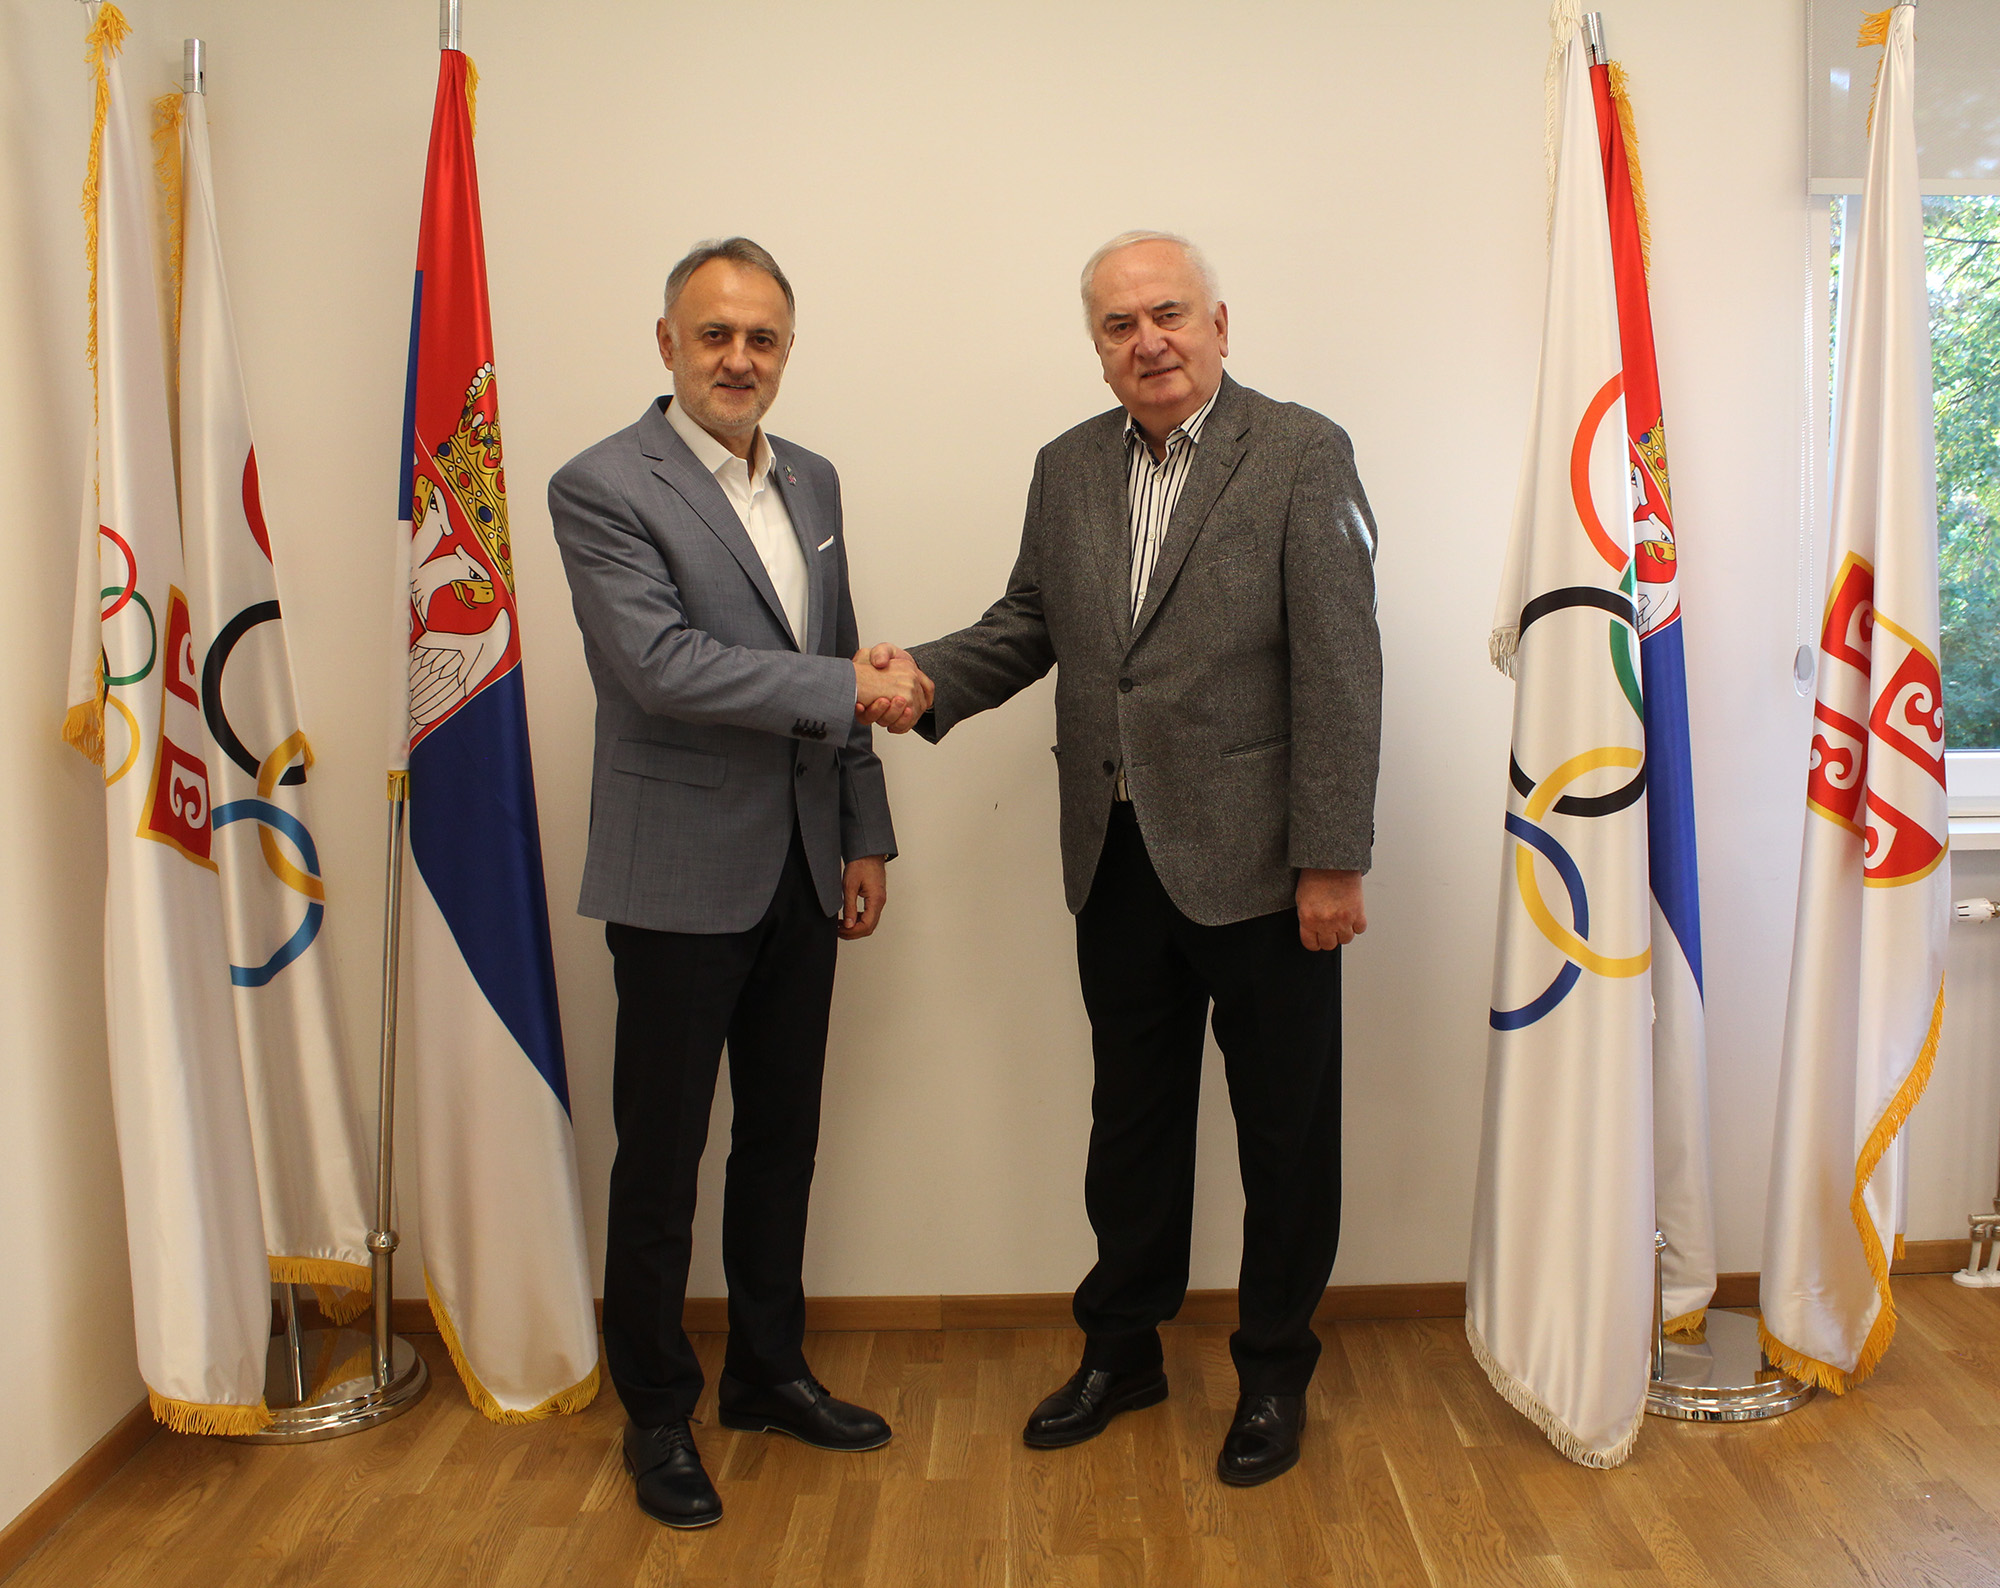 Olimpijski komitet Srbije ugostio delegaciju Ministarstva sporta 